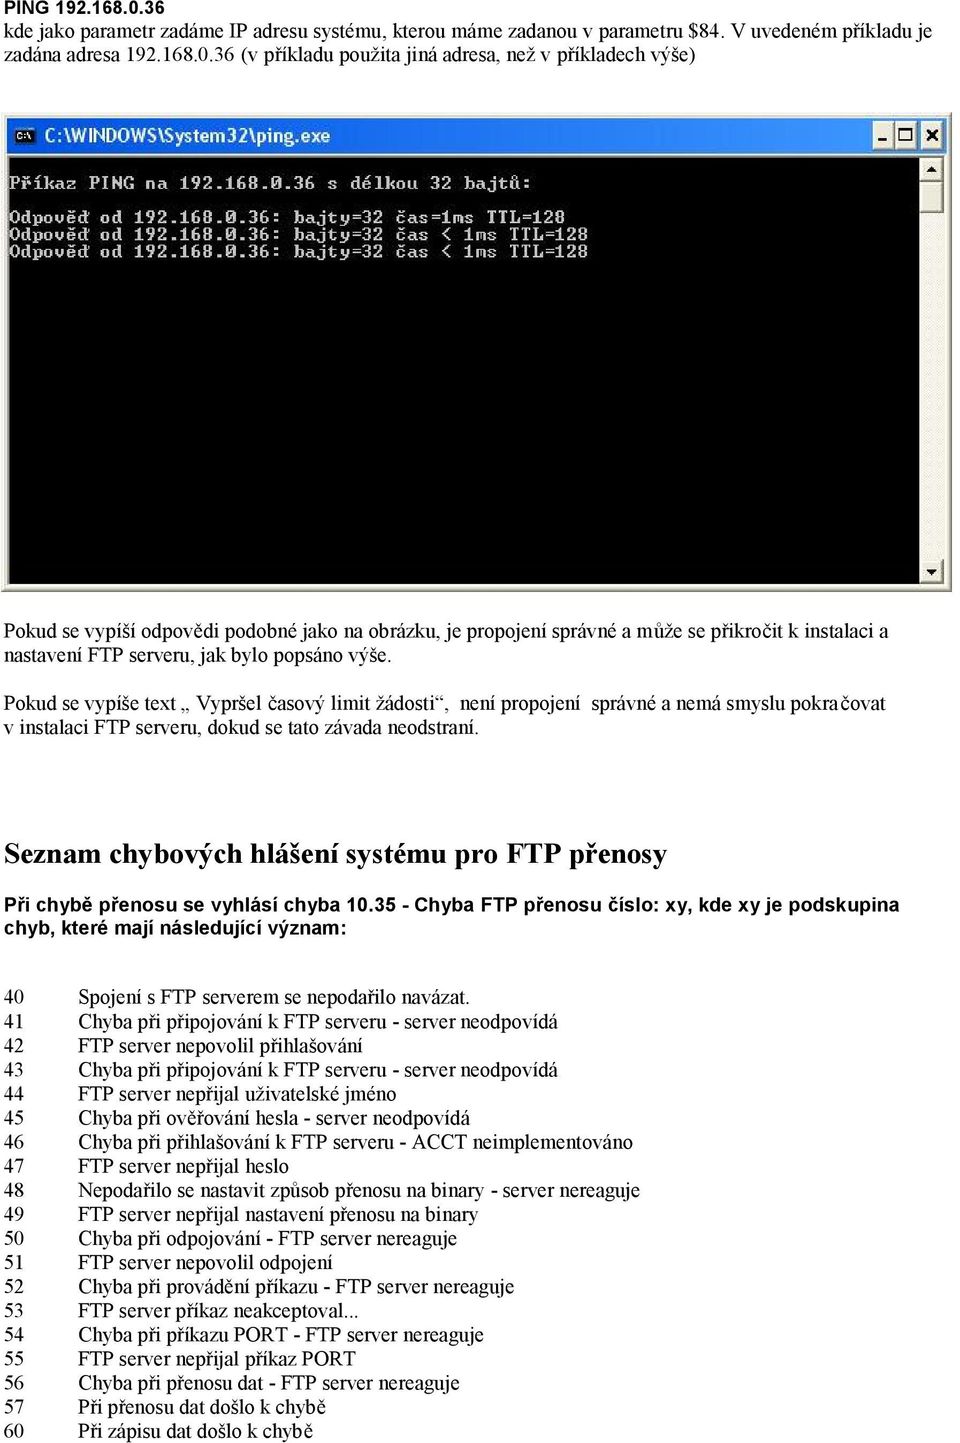 36 (v příkladu použita jiná adresa, než v příkladech výše) Pokud se vypíší odpovědi podobné jako na obrázku, je propojení správné a může se přikročit k instalaci a nastavení FTP serveru, jak bylo